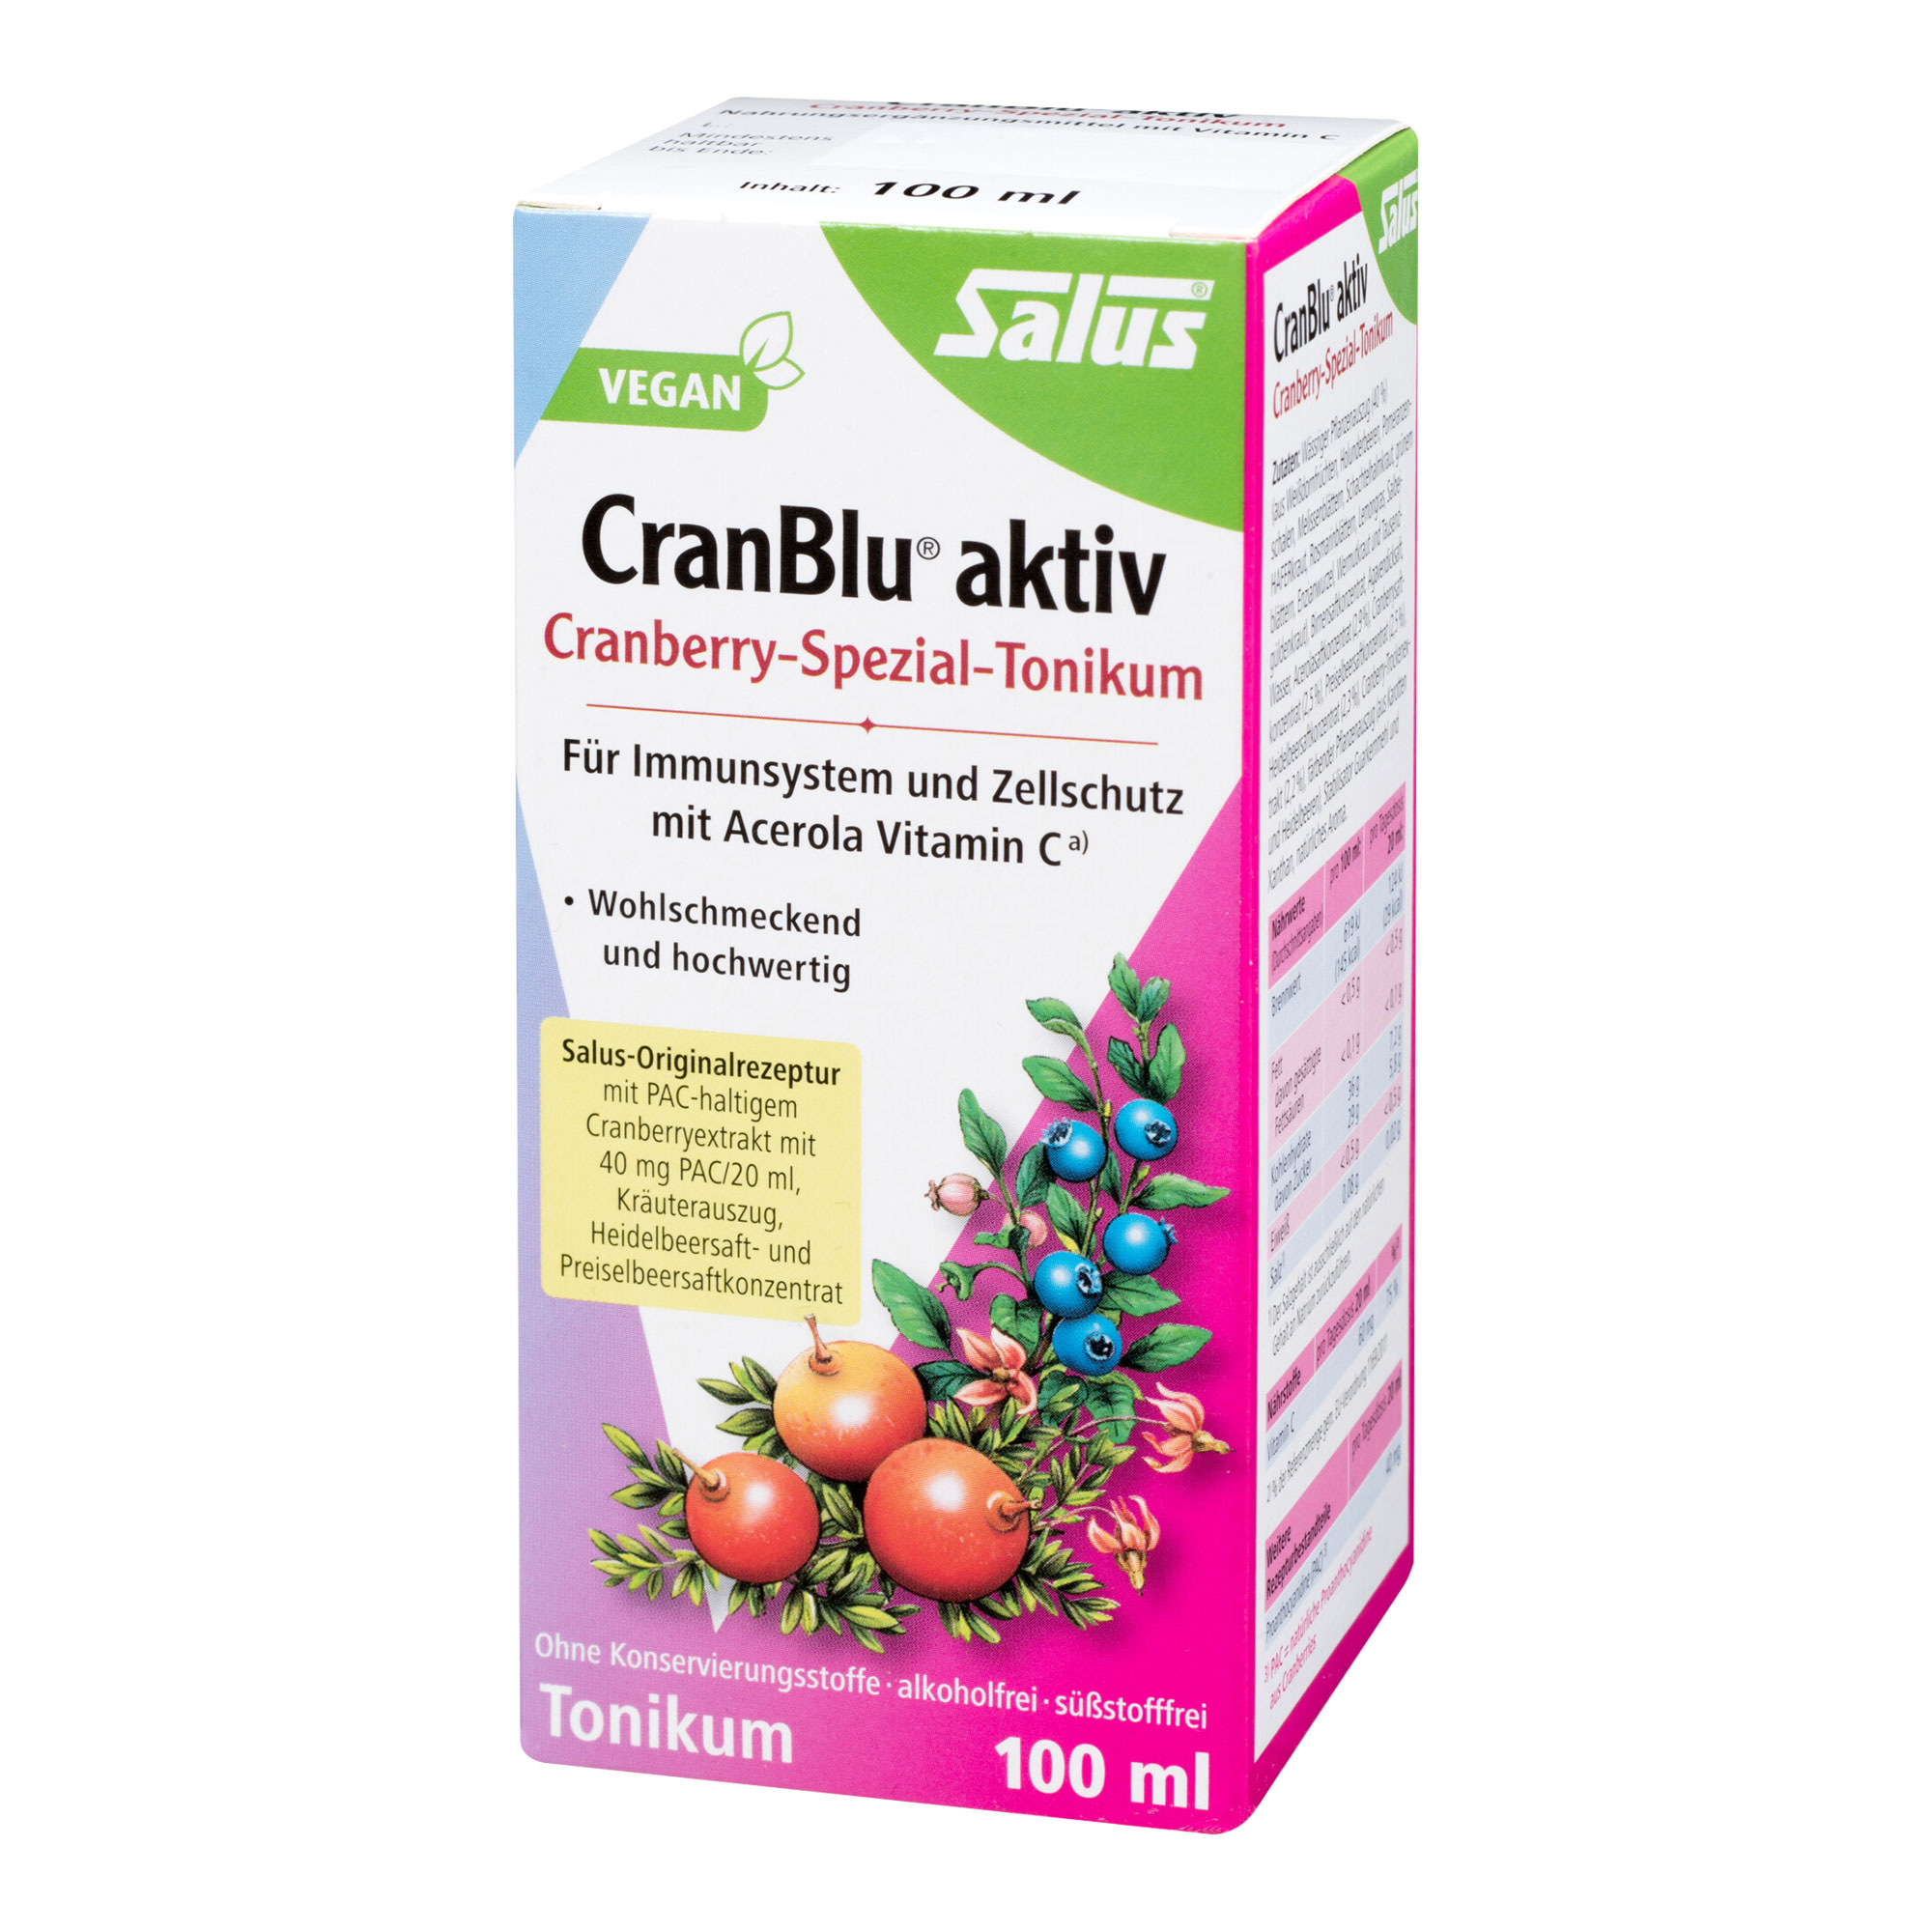 Nahrungsergänzungsmittel mit PAC-haltigem Cranberryextrakt mit 40 mg PAC/20 ml, Kräuterauszug, Heidelbeersaft- und Preiselbeersaftkonzentrat.